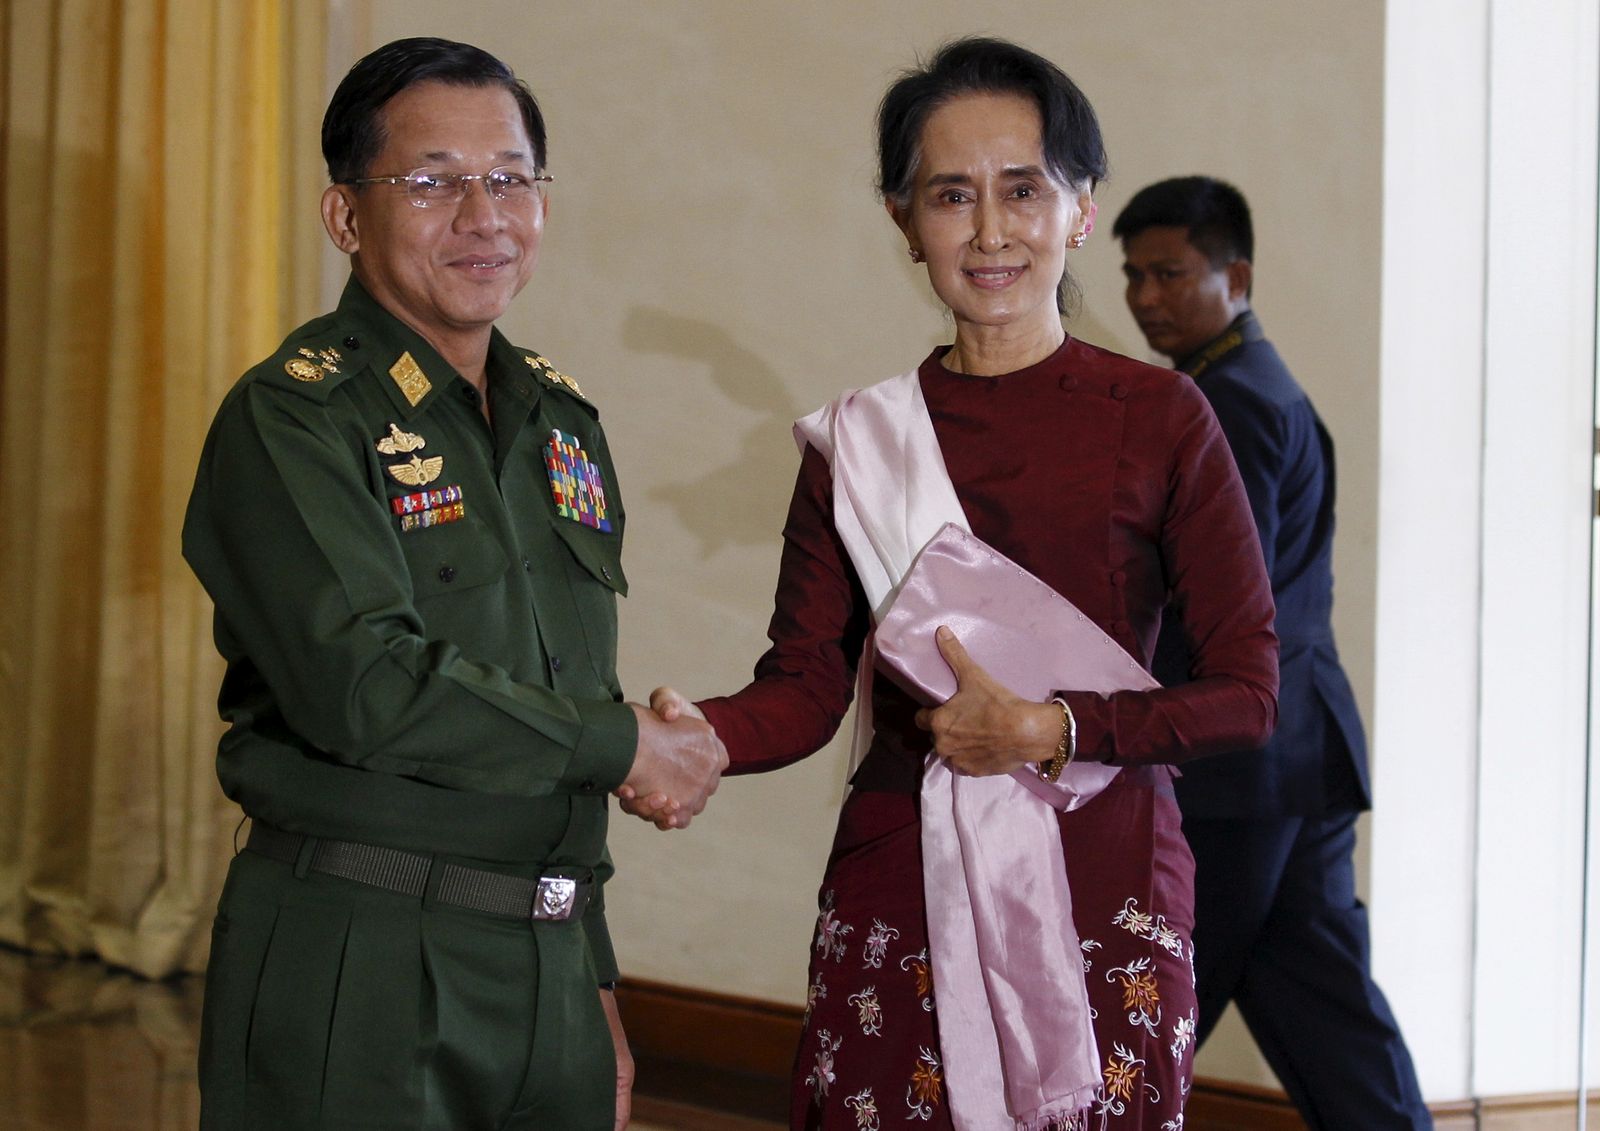 الحاكمة المدنية لميانمار أونغ سان سو تشي وقائد الجيش الجنرال مين أونغ هلاينغ خلال لقاء في نايبيتاو - 2 ديسمبر 2015 - REUTERS